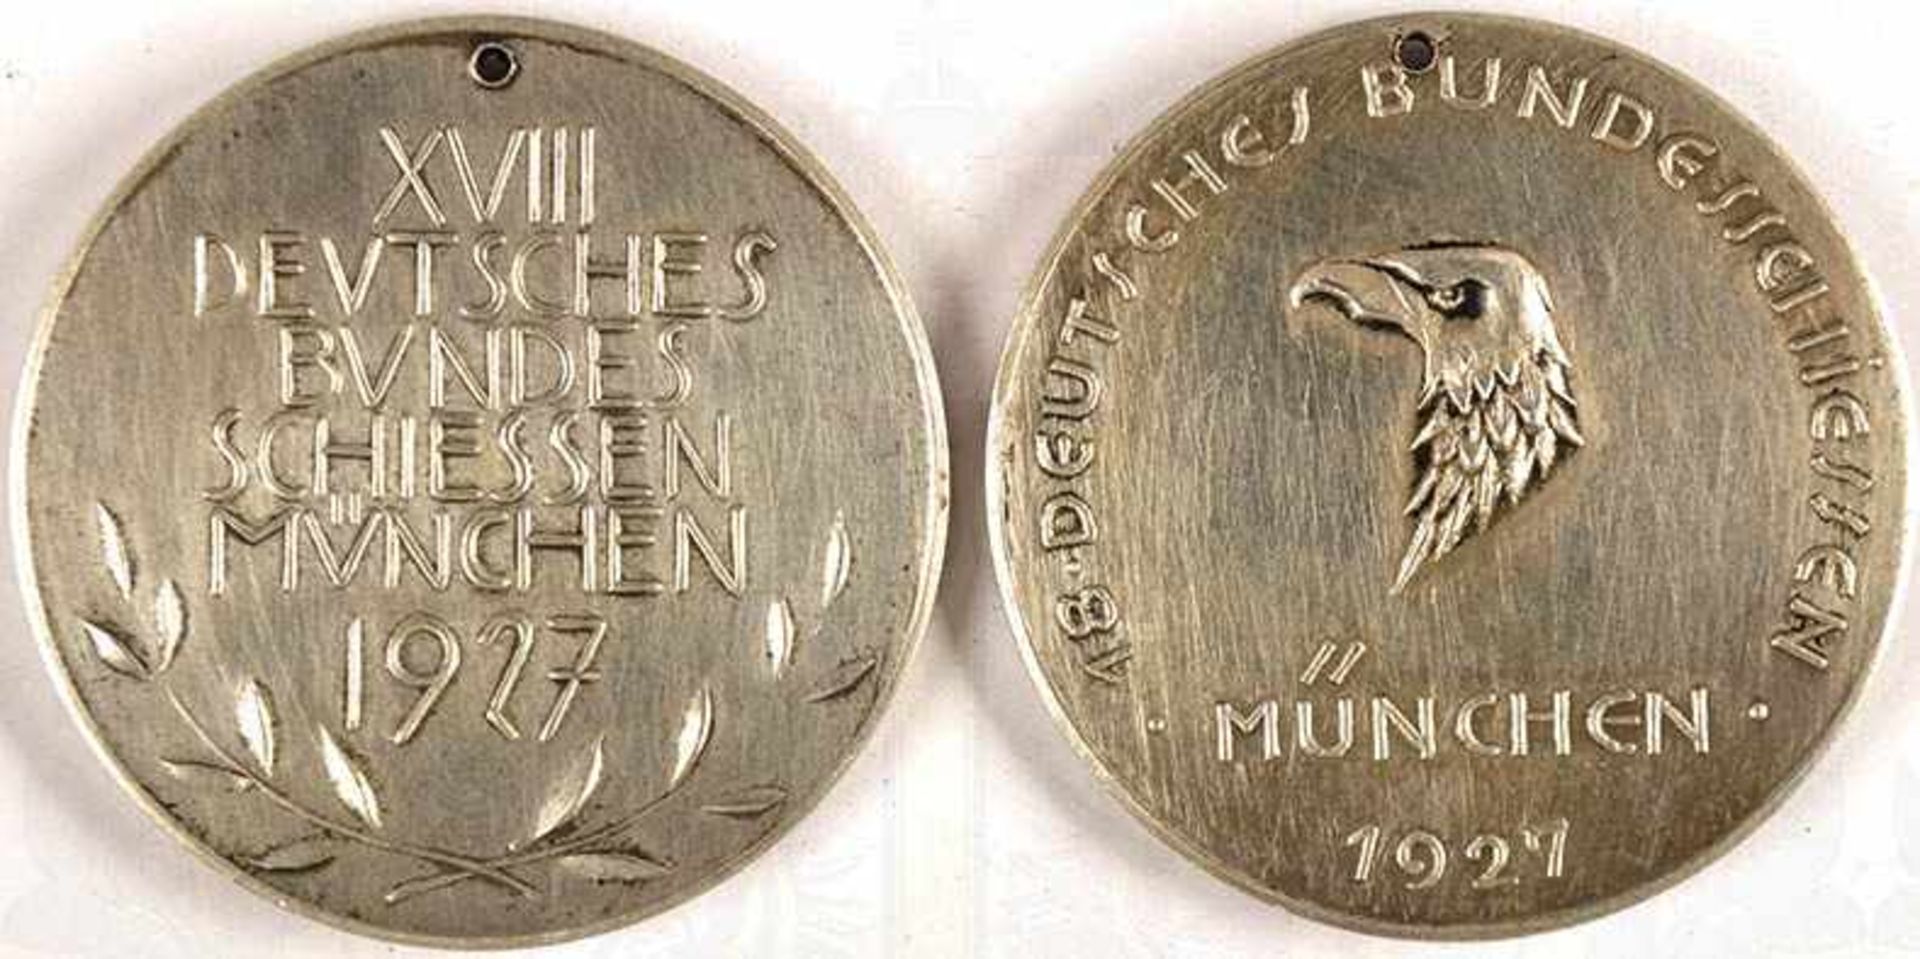 2 MEDAILLEN „18. Deutsches Bundesschiessen München 1927“, bde. Silber, Punze „950“, reliefierter